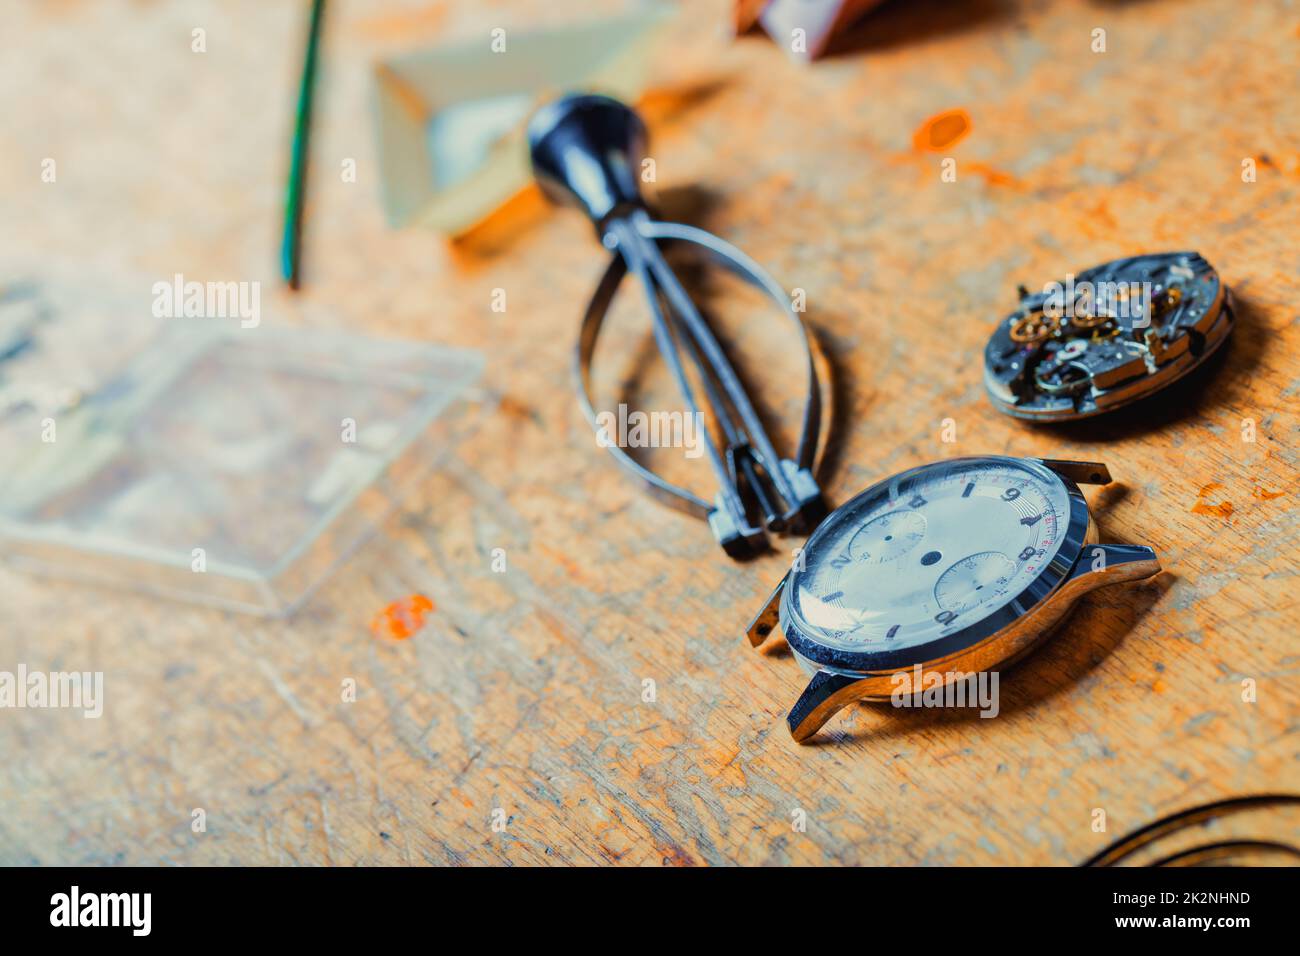 Armbanduhr und lose Mechanik, die auf einer Uhrmacherbank liegen Stockfoto